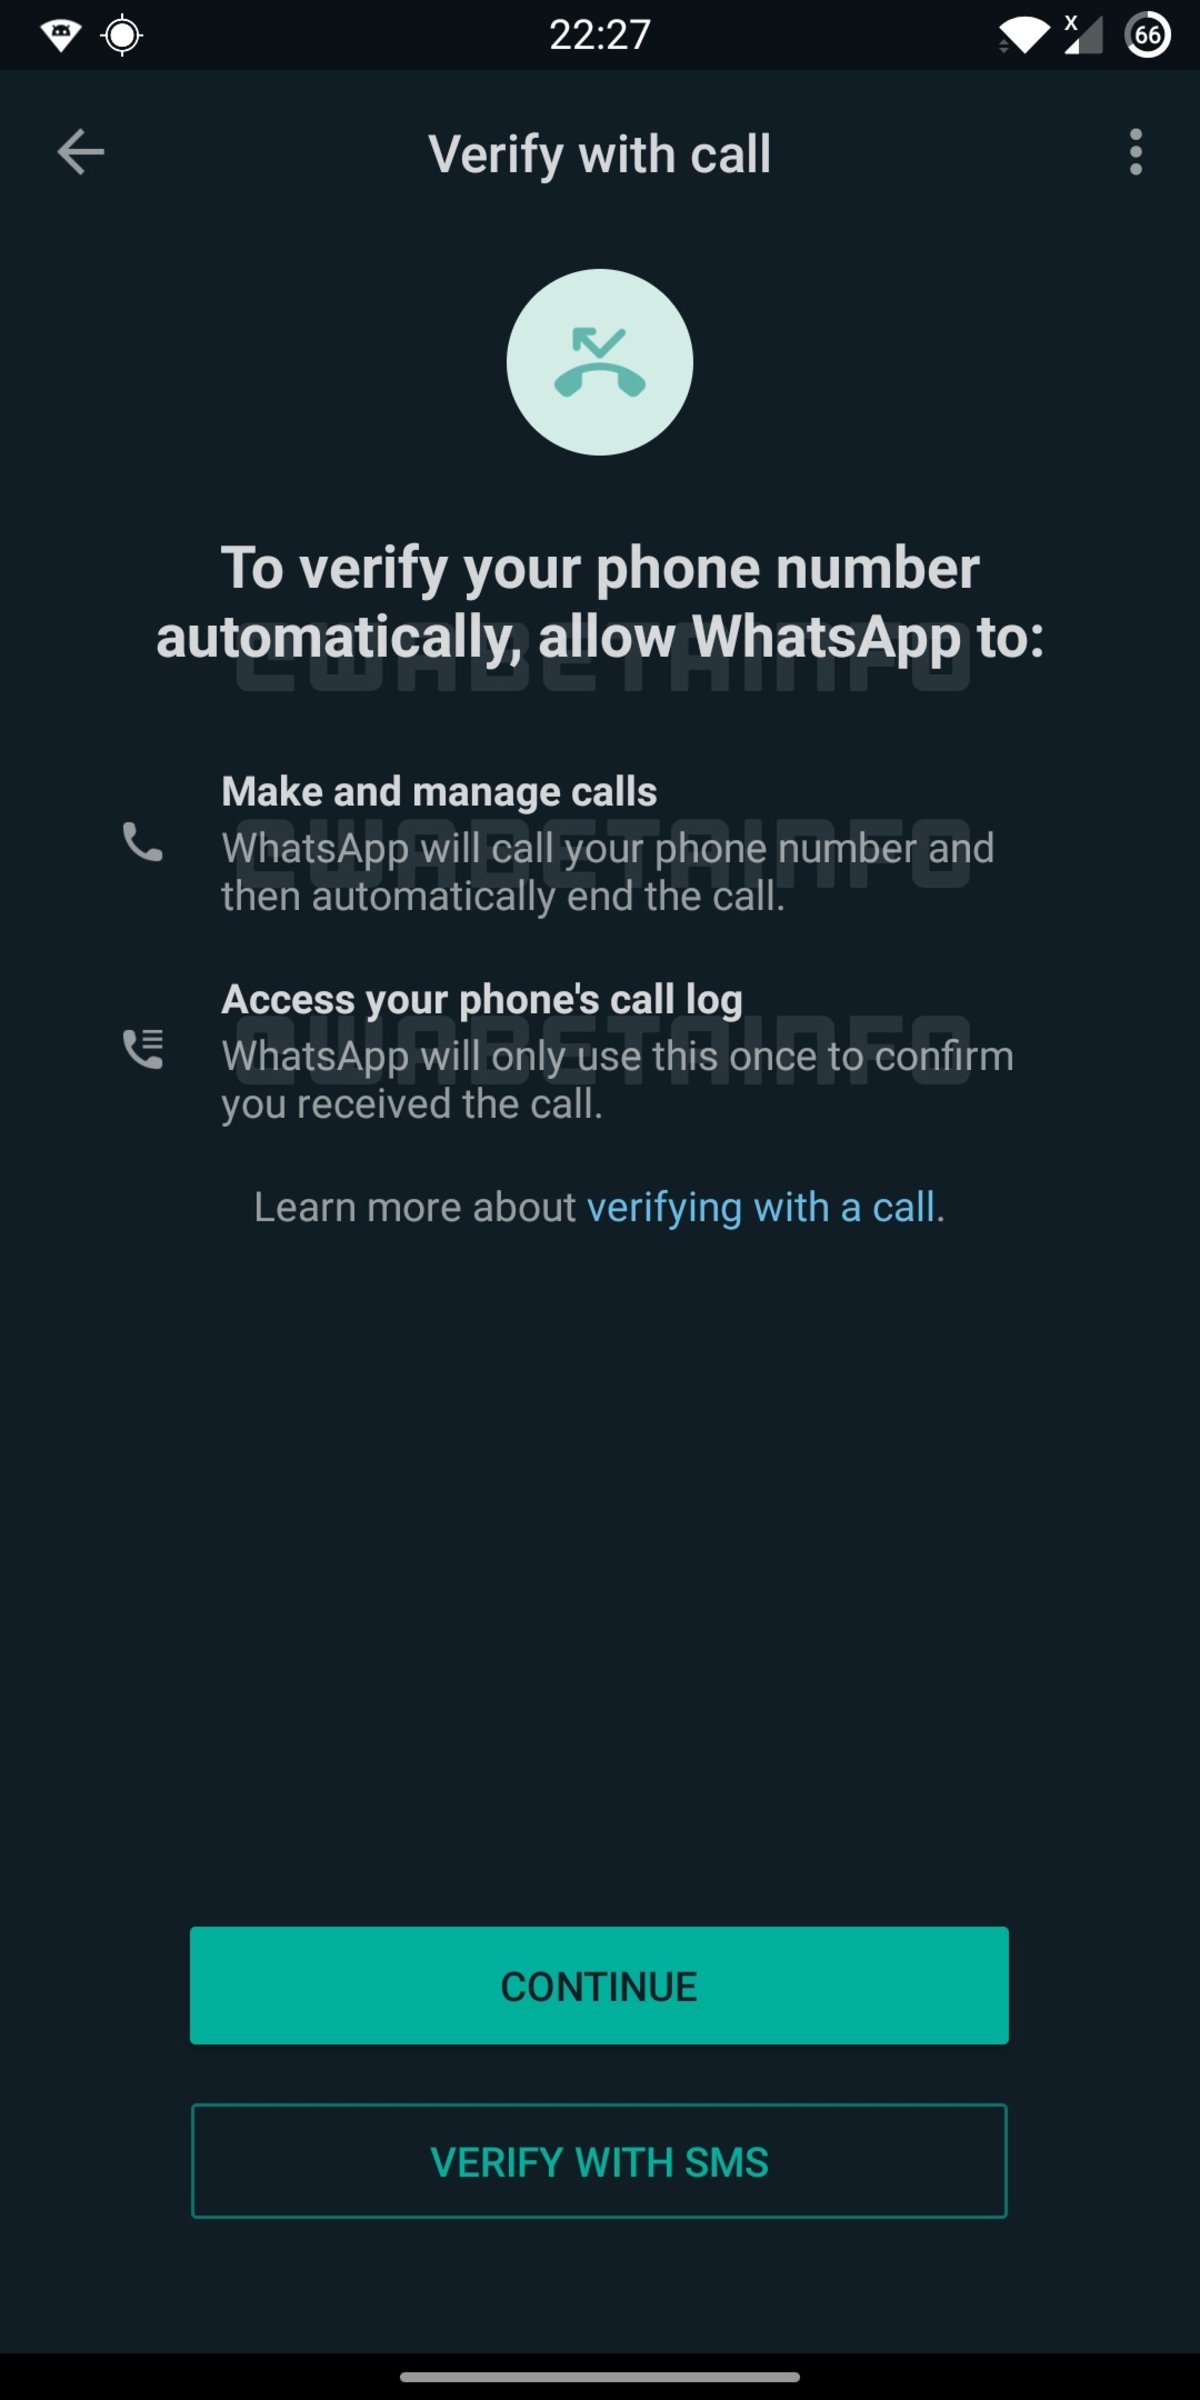 Verificacion automática de cuenta en WhatsApp